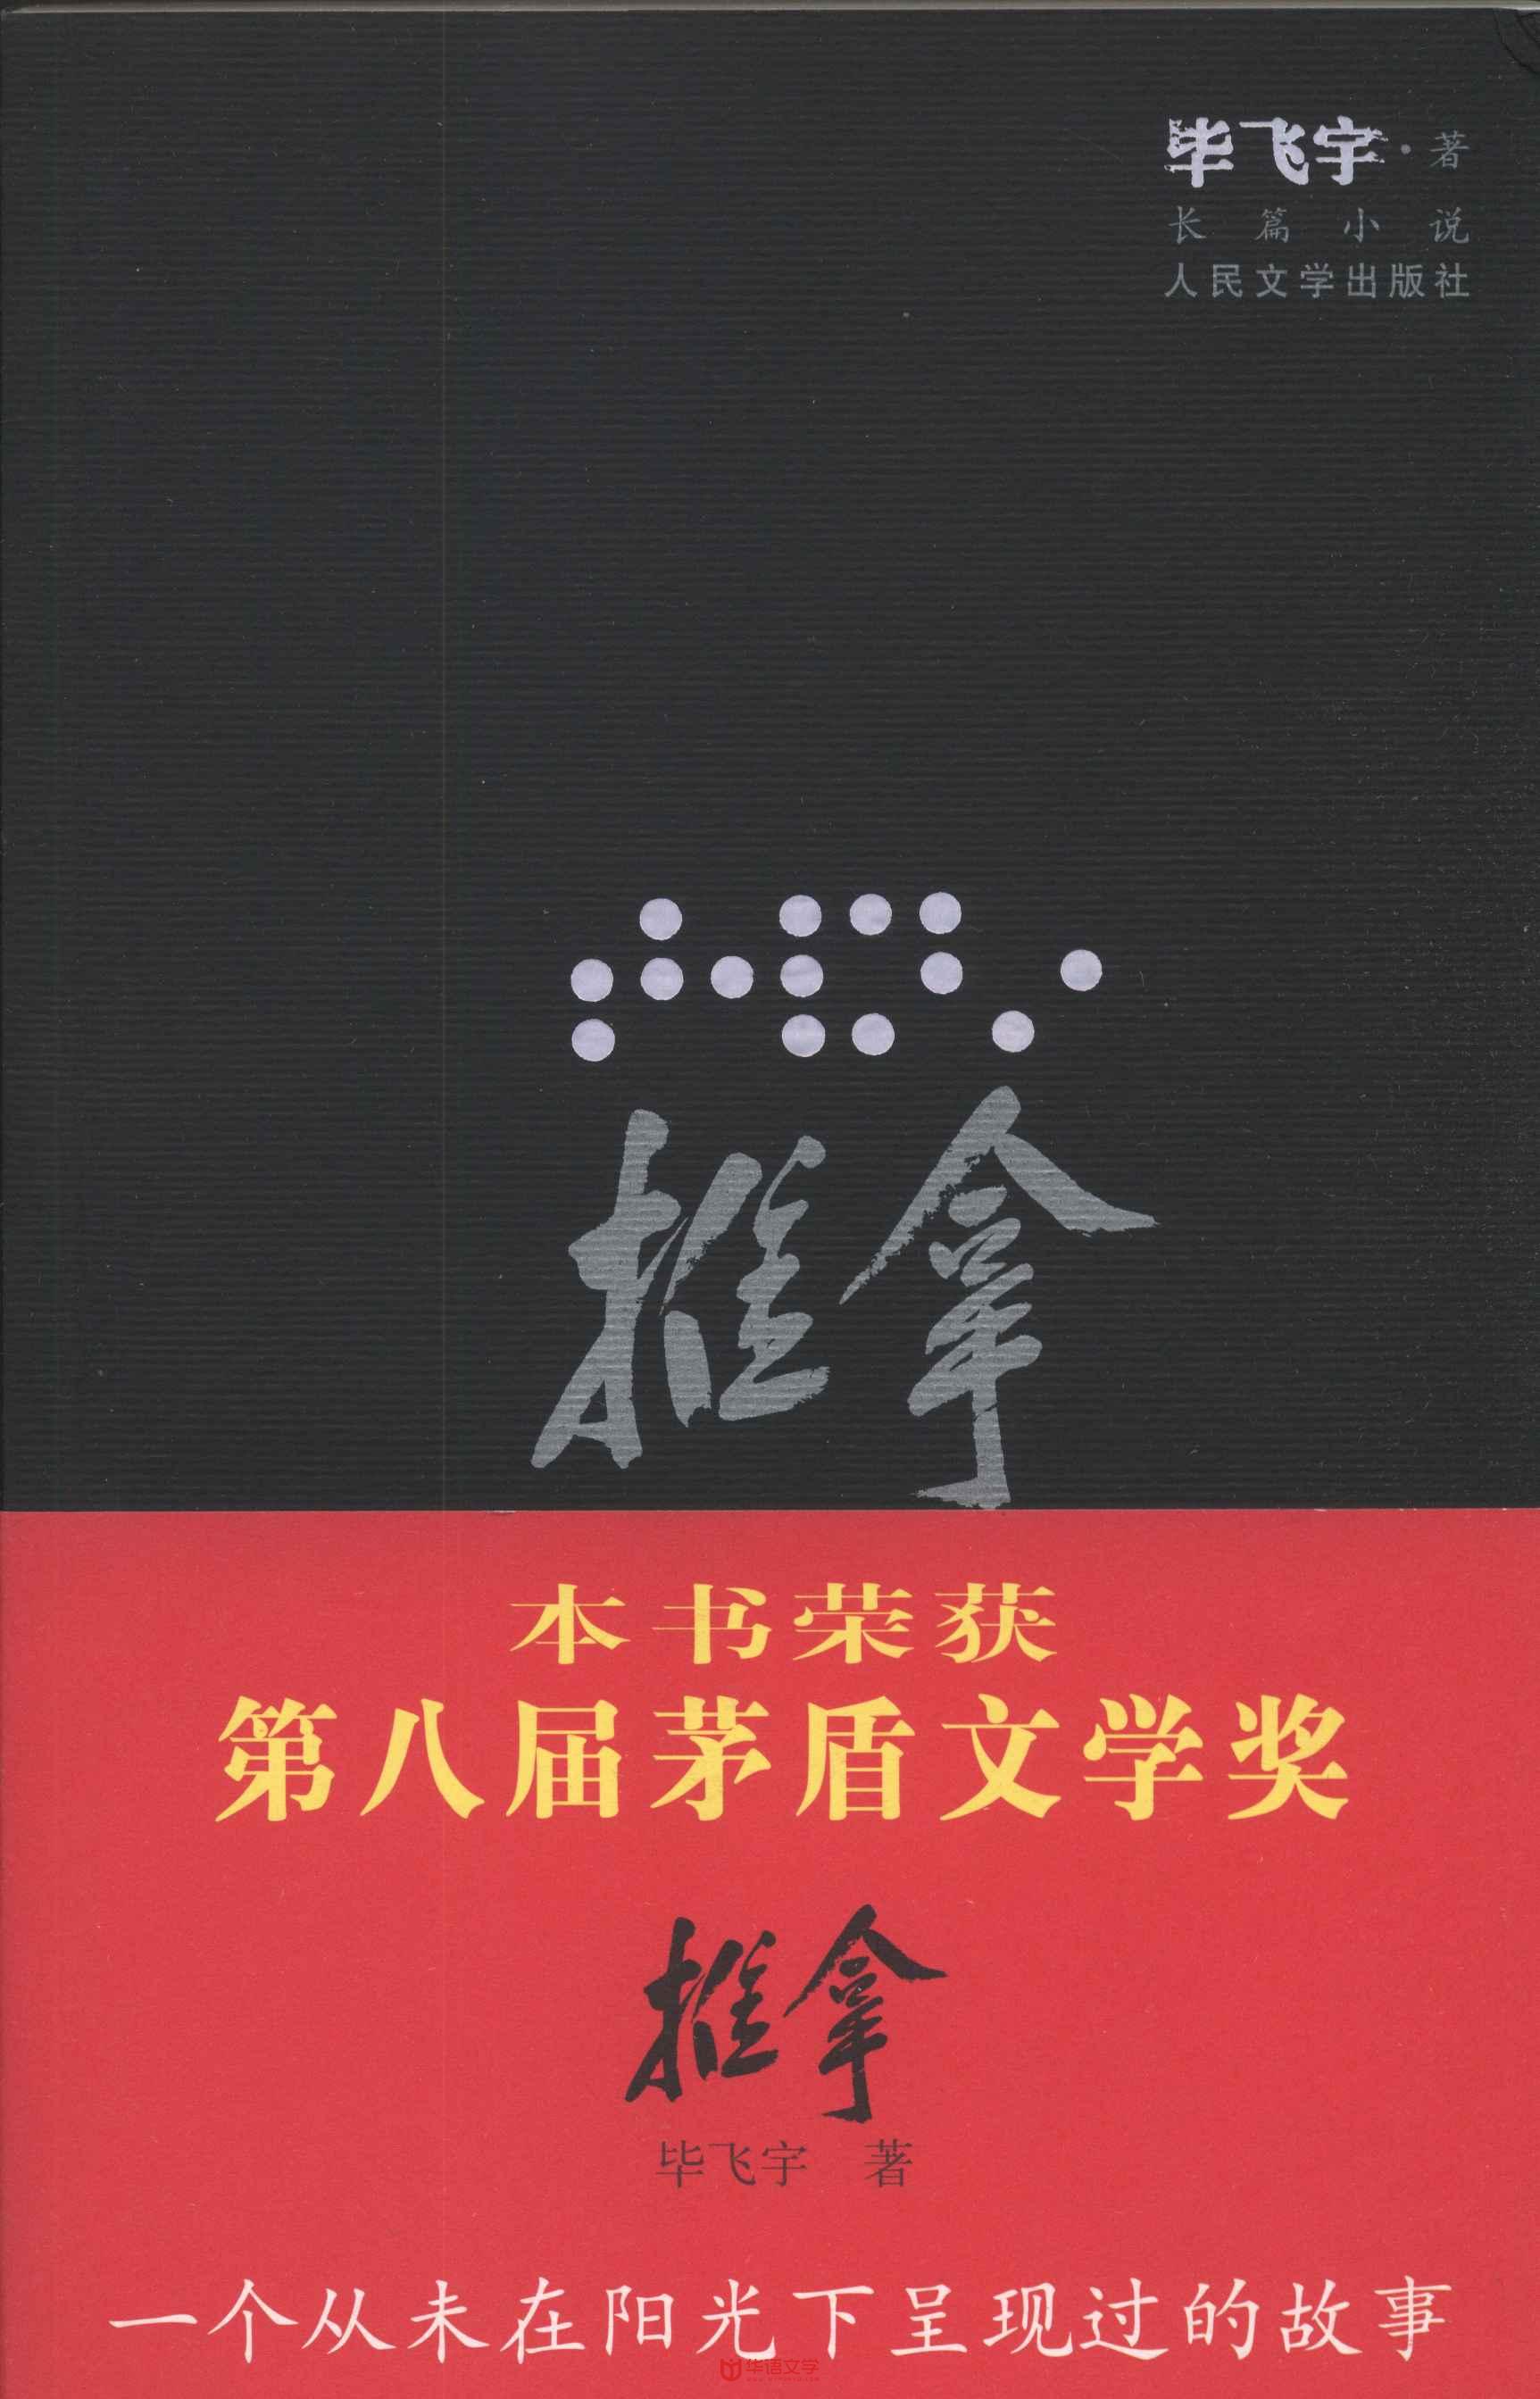 华语文学网——华语文学网是大型文学数字内容投送和行业服务平台。平台 